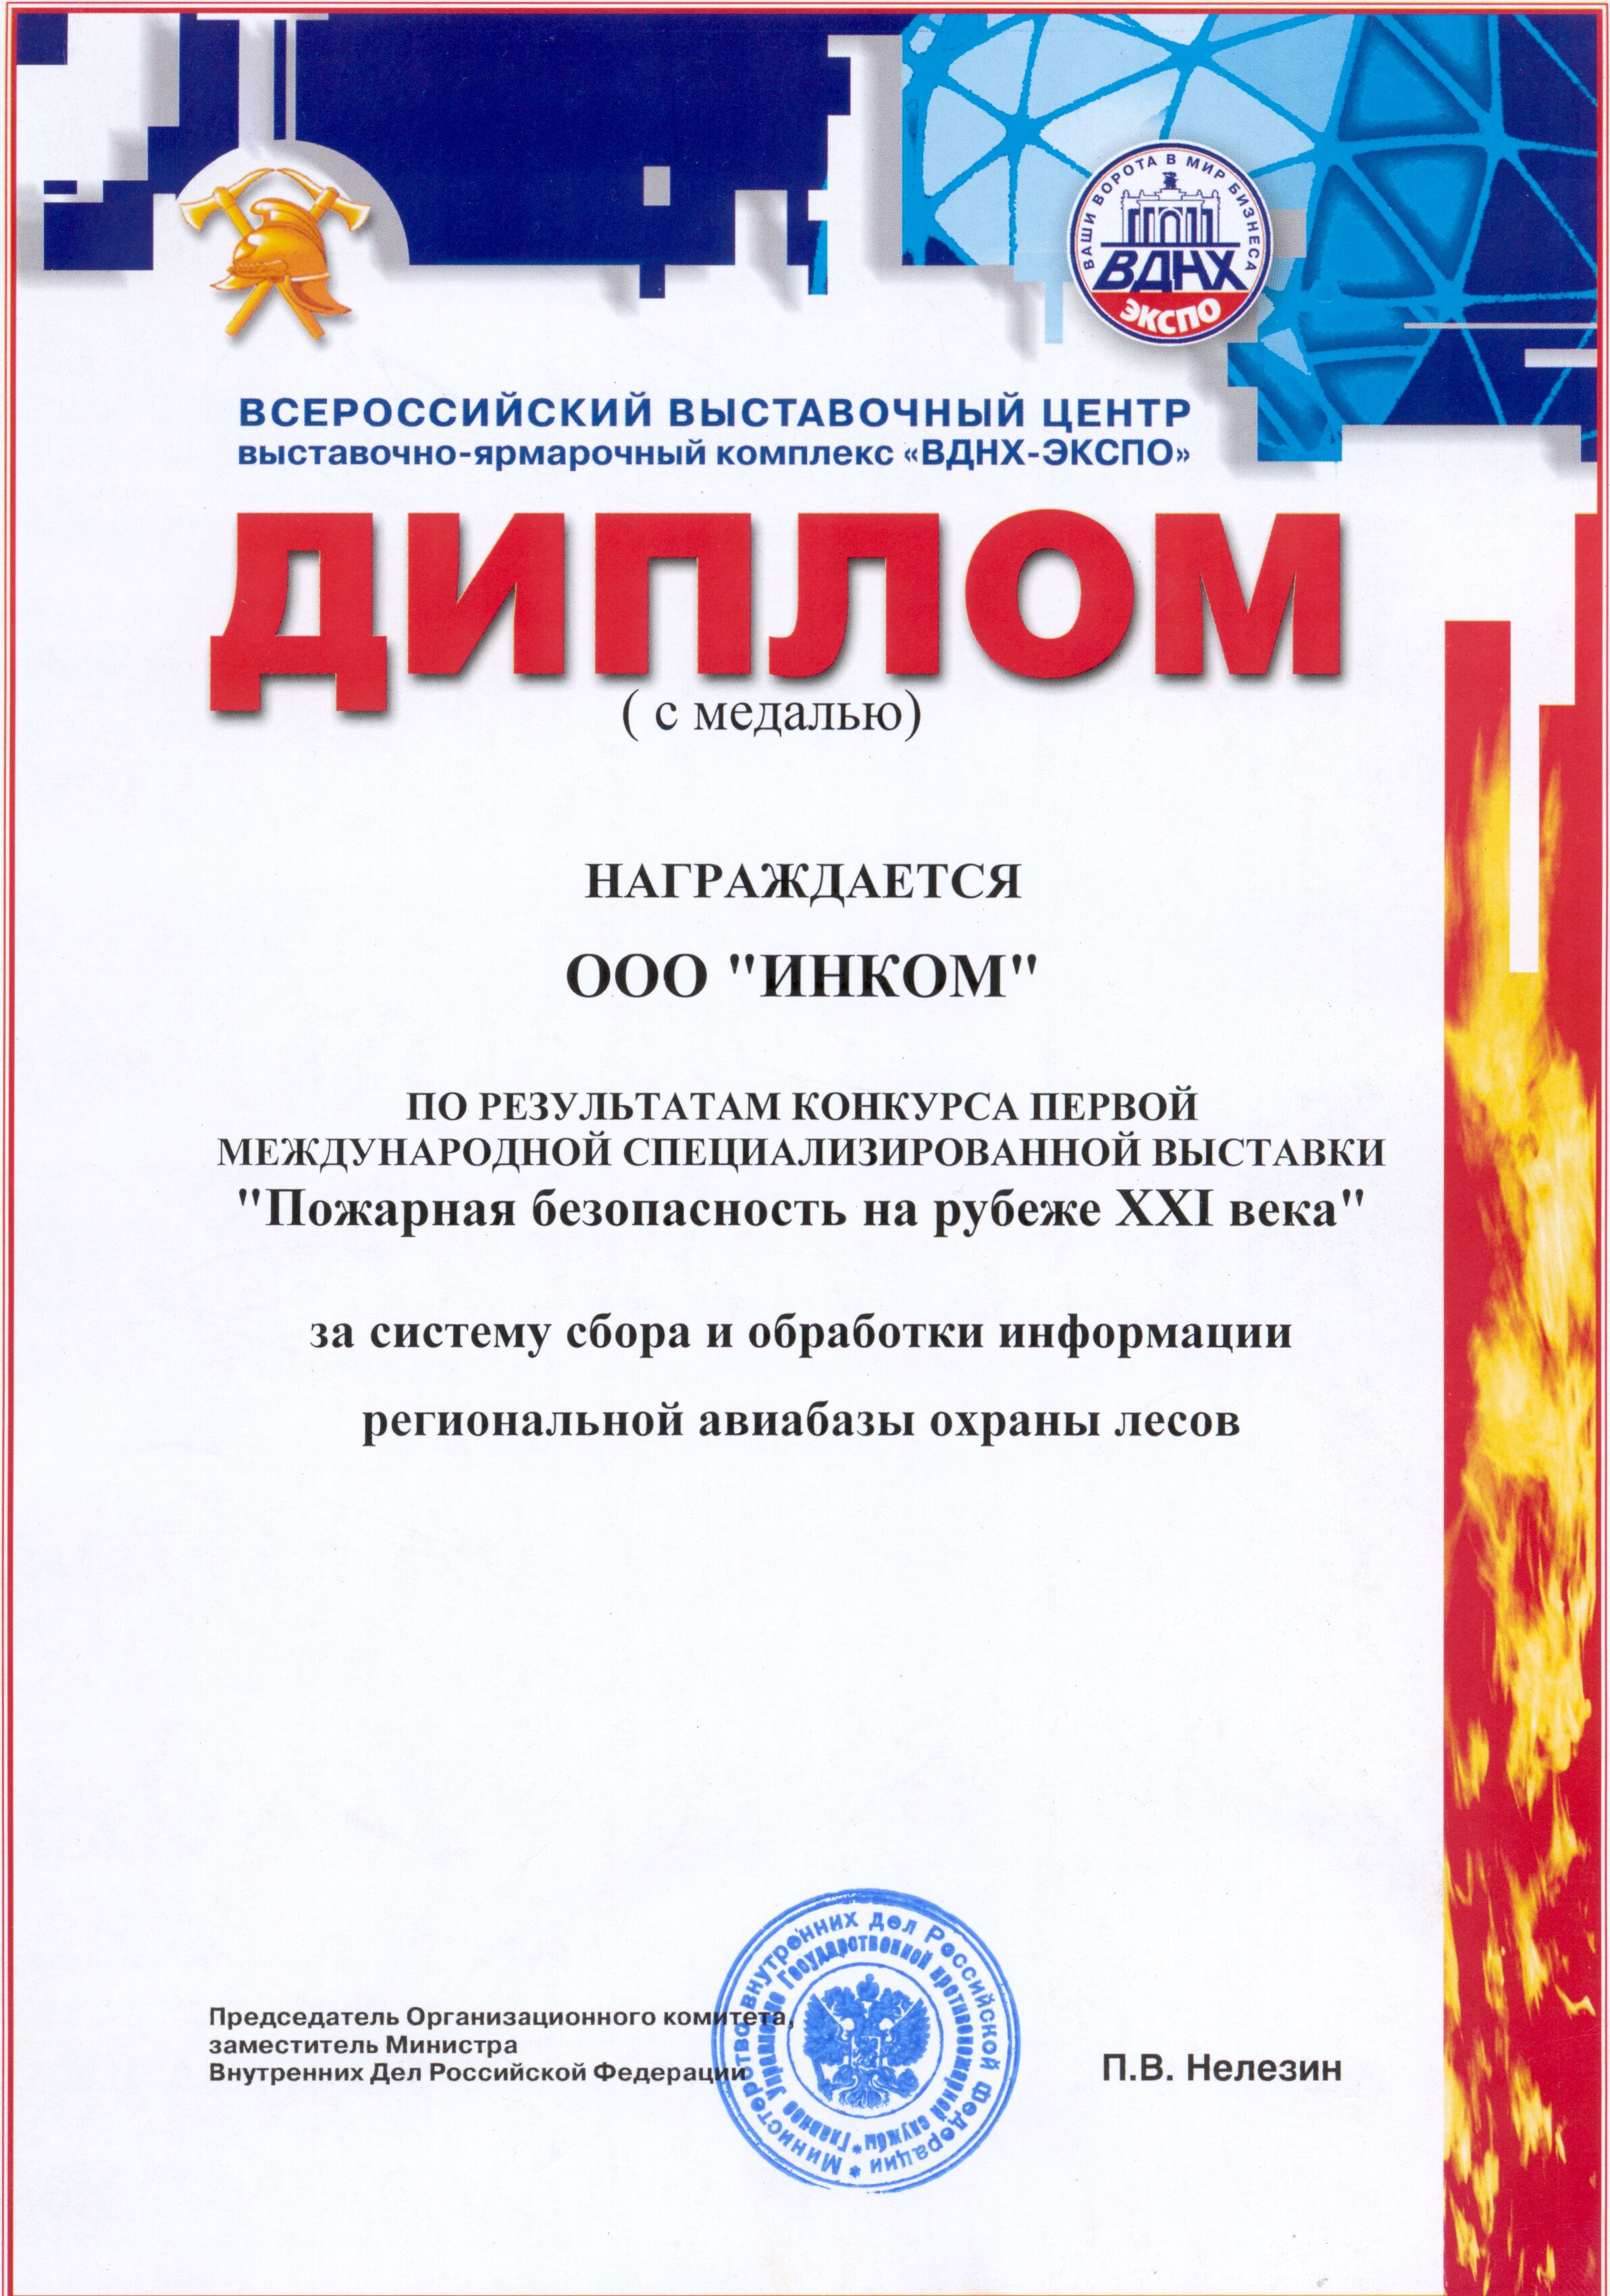 Диплом выставки "Пожарная безопасность" за систему сбора и обработки информации региональной авиабазы охраны лесов